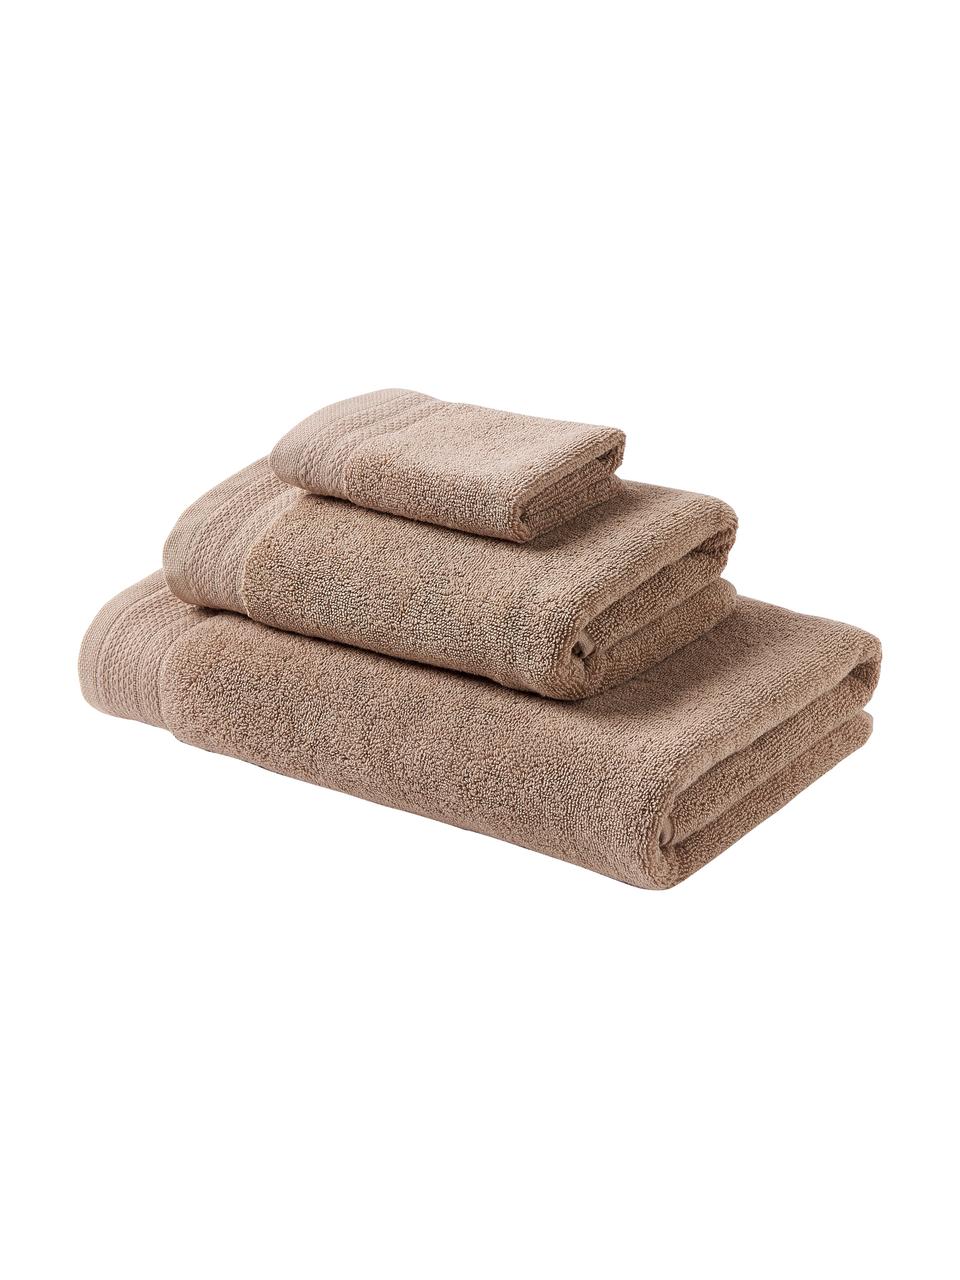 Lot de serviettes de bain en coton bio Premium, 3 élém., 100 % coton bio certifié GOTS (par GCL International, GCL-300517)
Qualité supérieure 600 g/m², Beige, Lot de différentes tailles